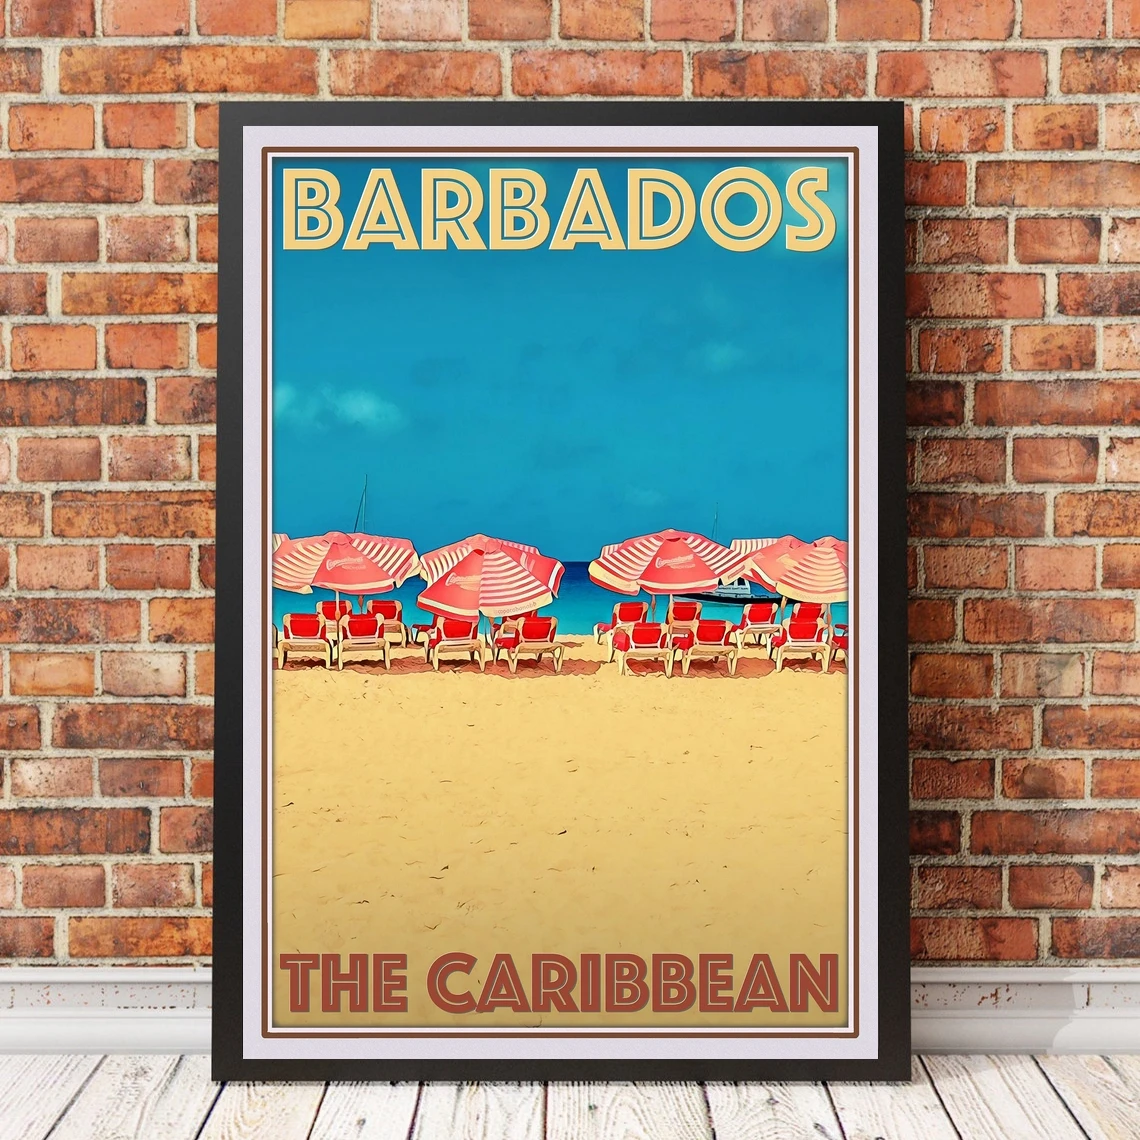 

Постер или холст в винтажном стиле ретро для путешествий-картина для украшения дома из Карибского моря Барбадоса (без рамки)